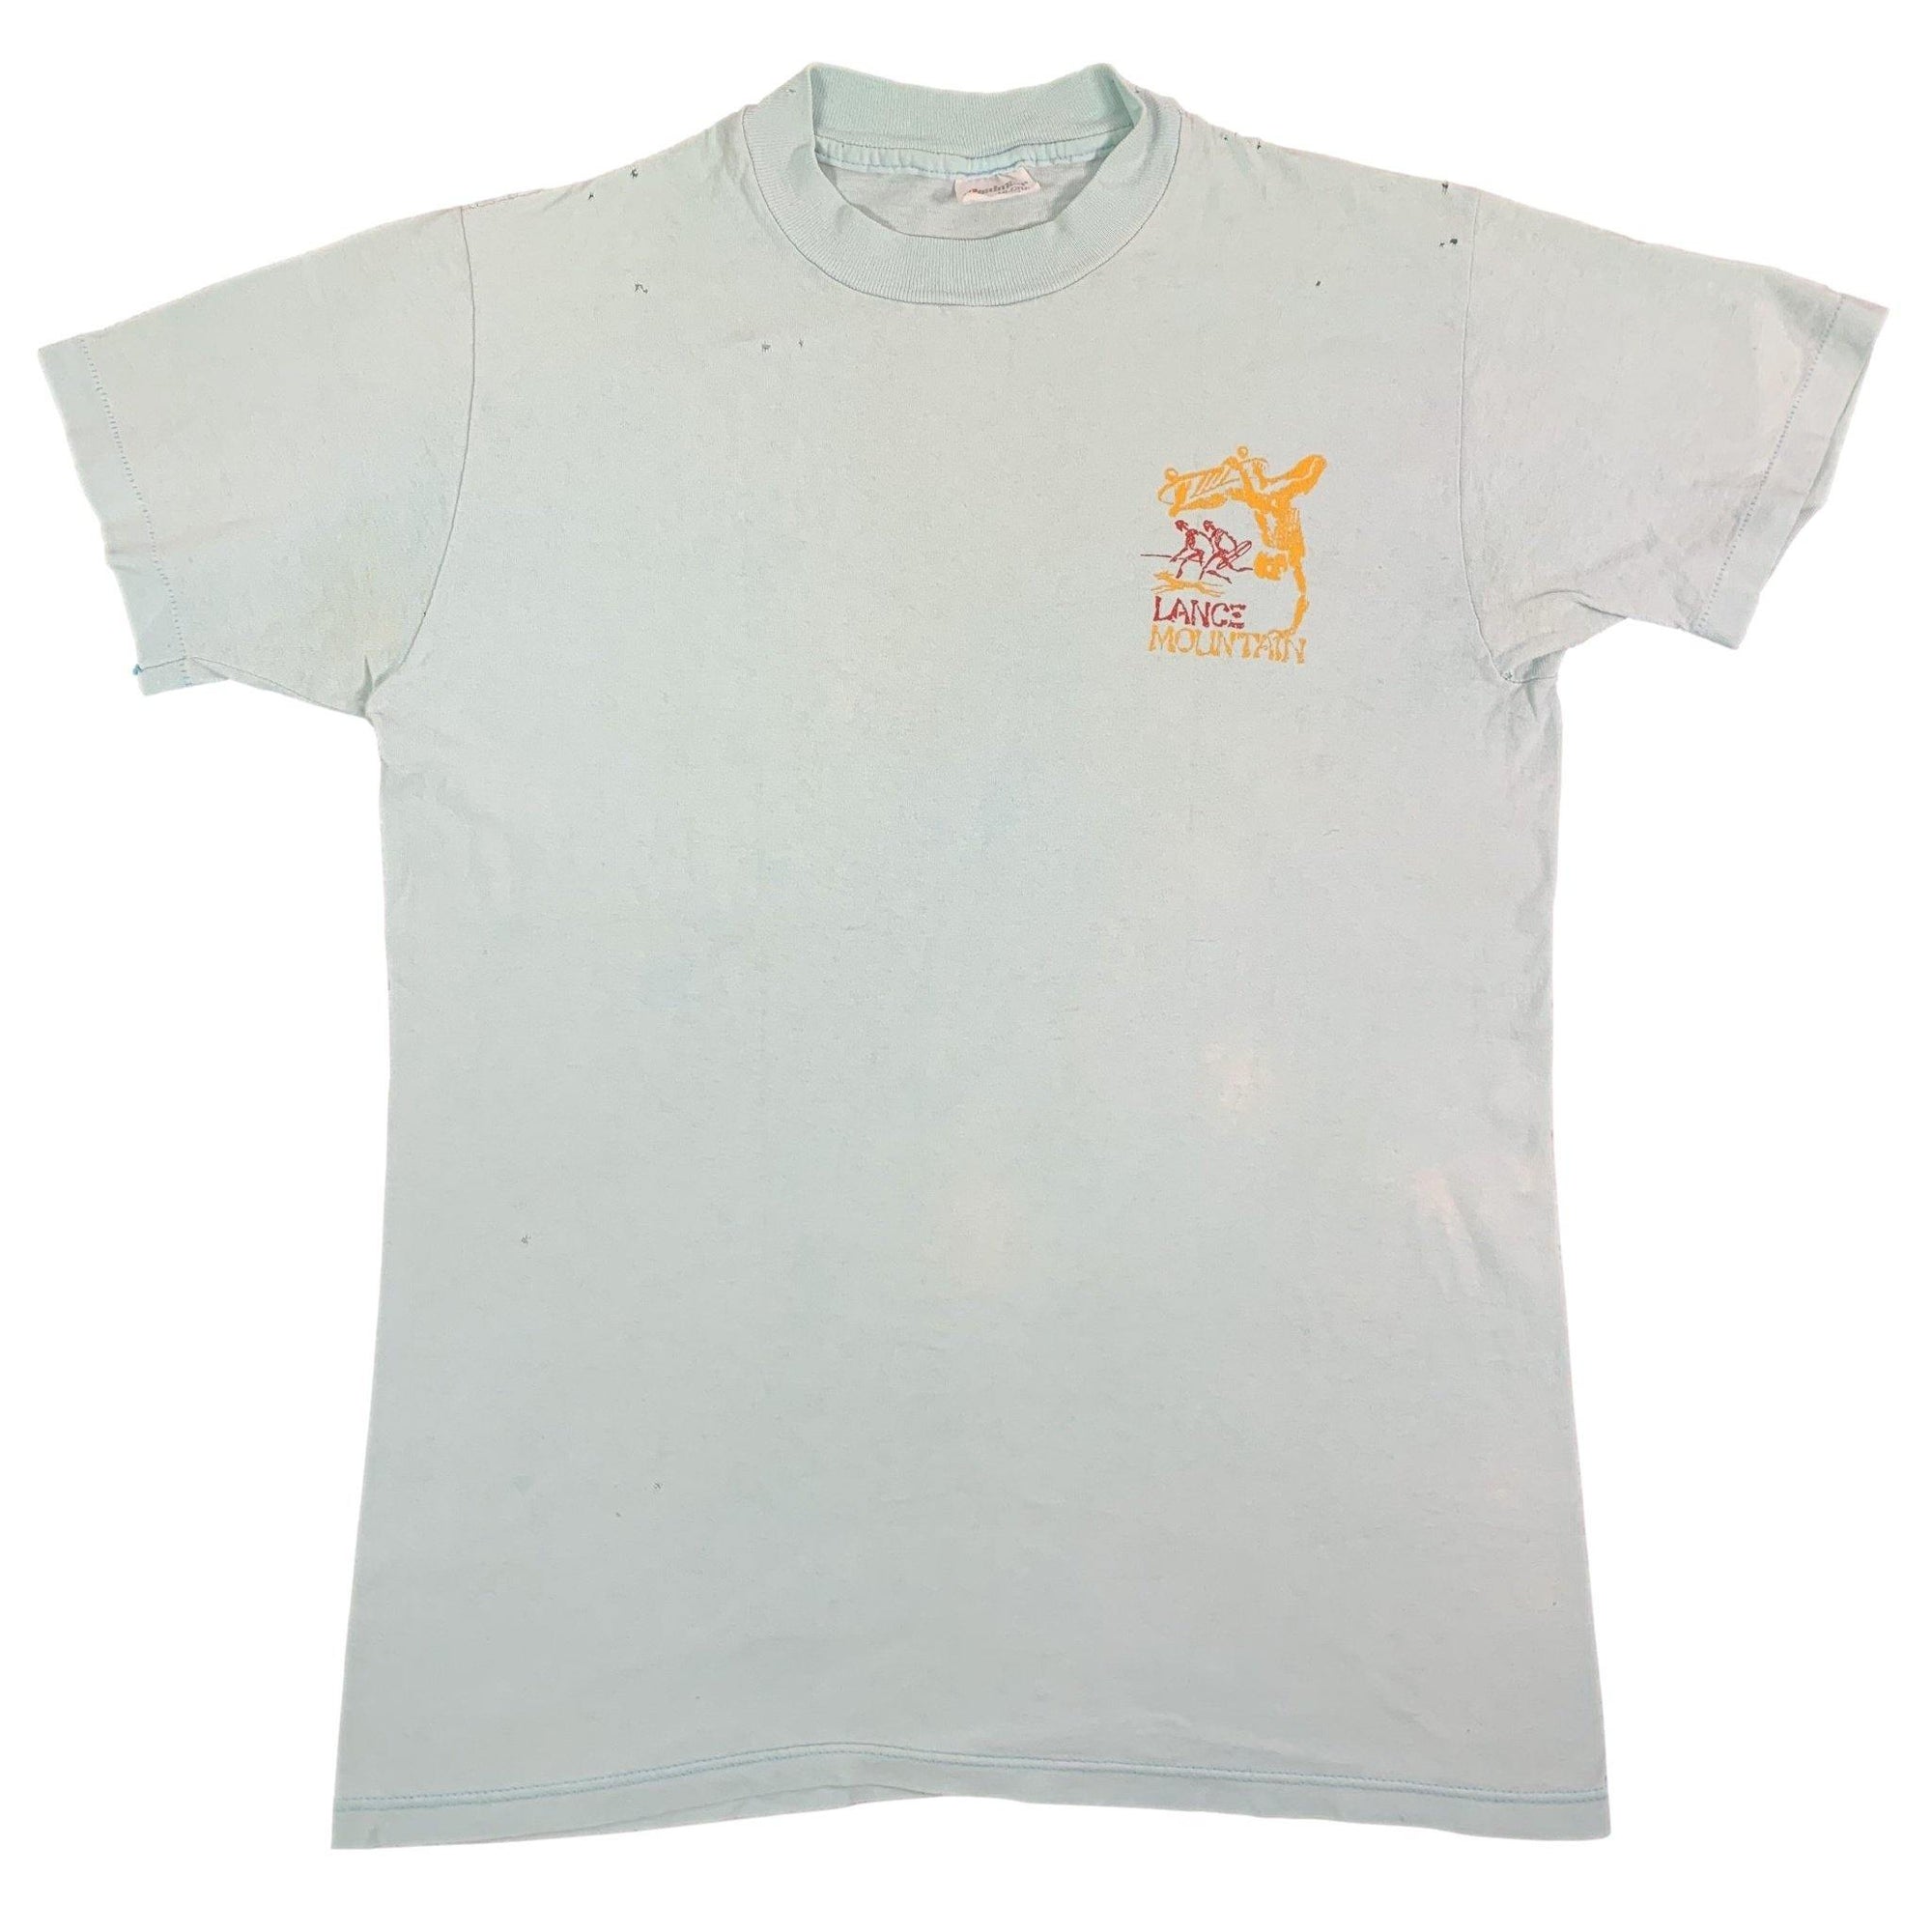 Vintage Lance Mountain "Powell Peralta" T-Shirt - jointcustodydc